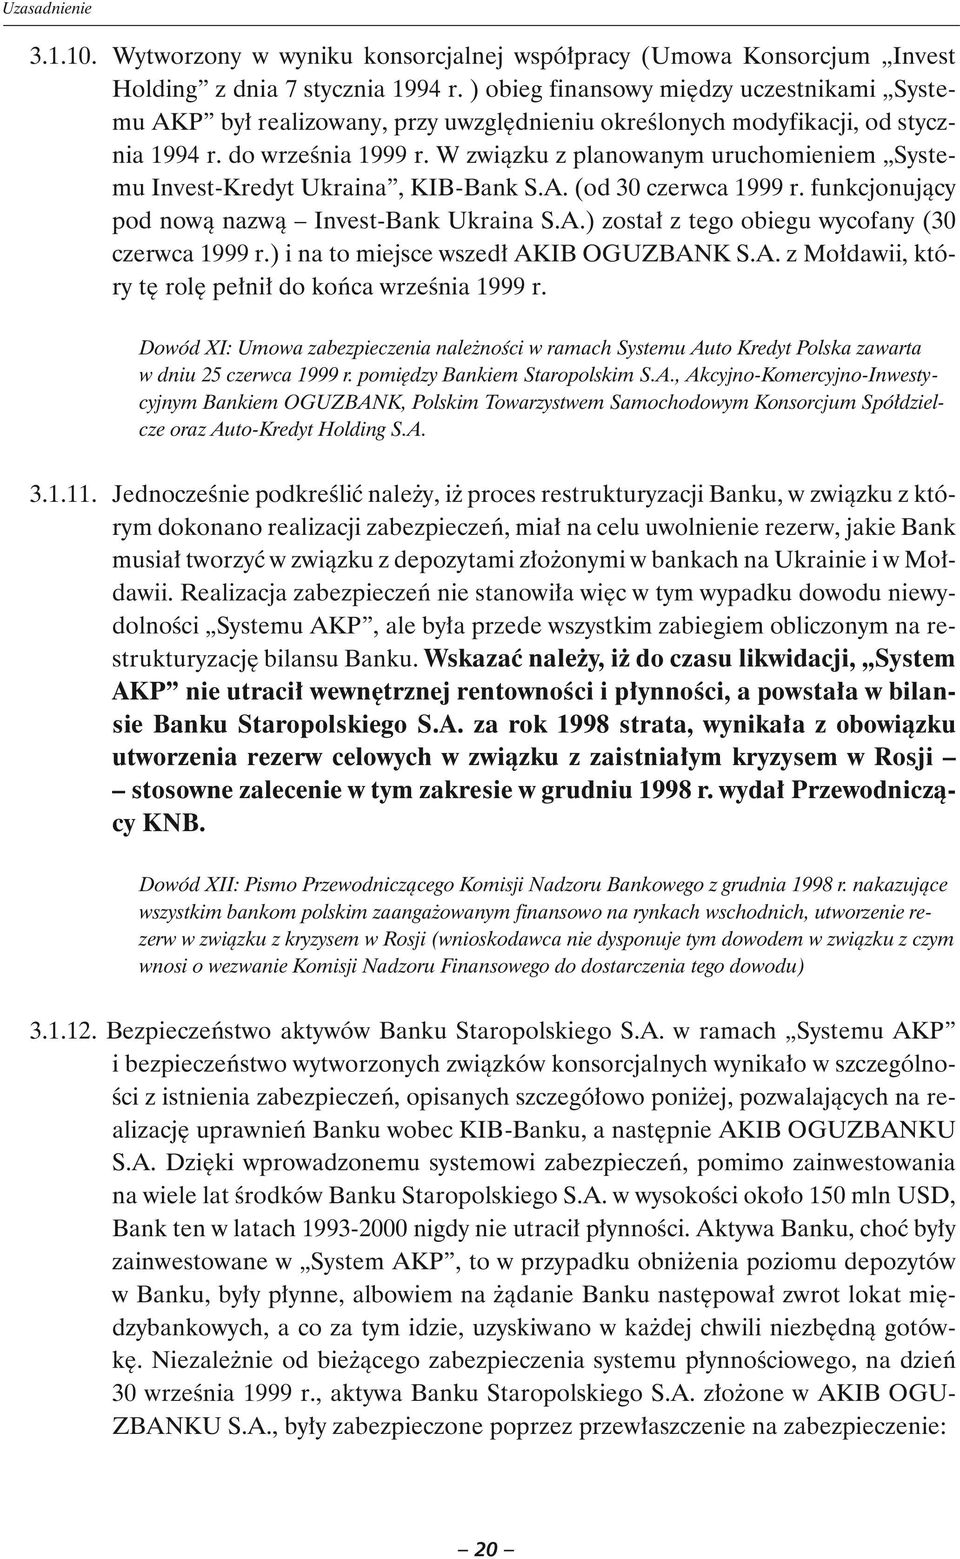 W związku z planowanym uruchomieniem Systemu Invest-Kredyt Ukraina, KIB-Bank S.A. (od 30 czerwca 1999 r. funkcjonujący pod nową nazwą Invest-Bank Ukraina S.A.) został z tego obiegu wycofany (30 czerwca 1999 r.